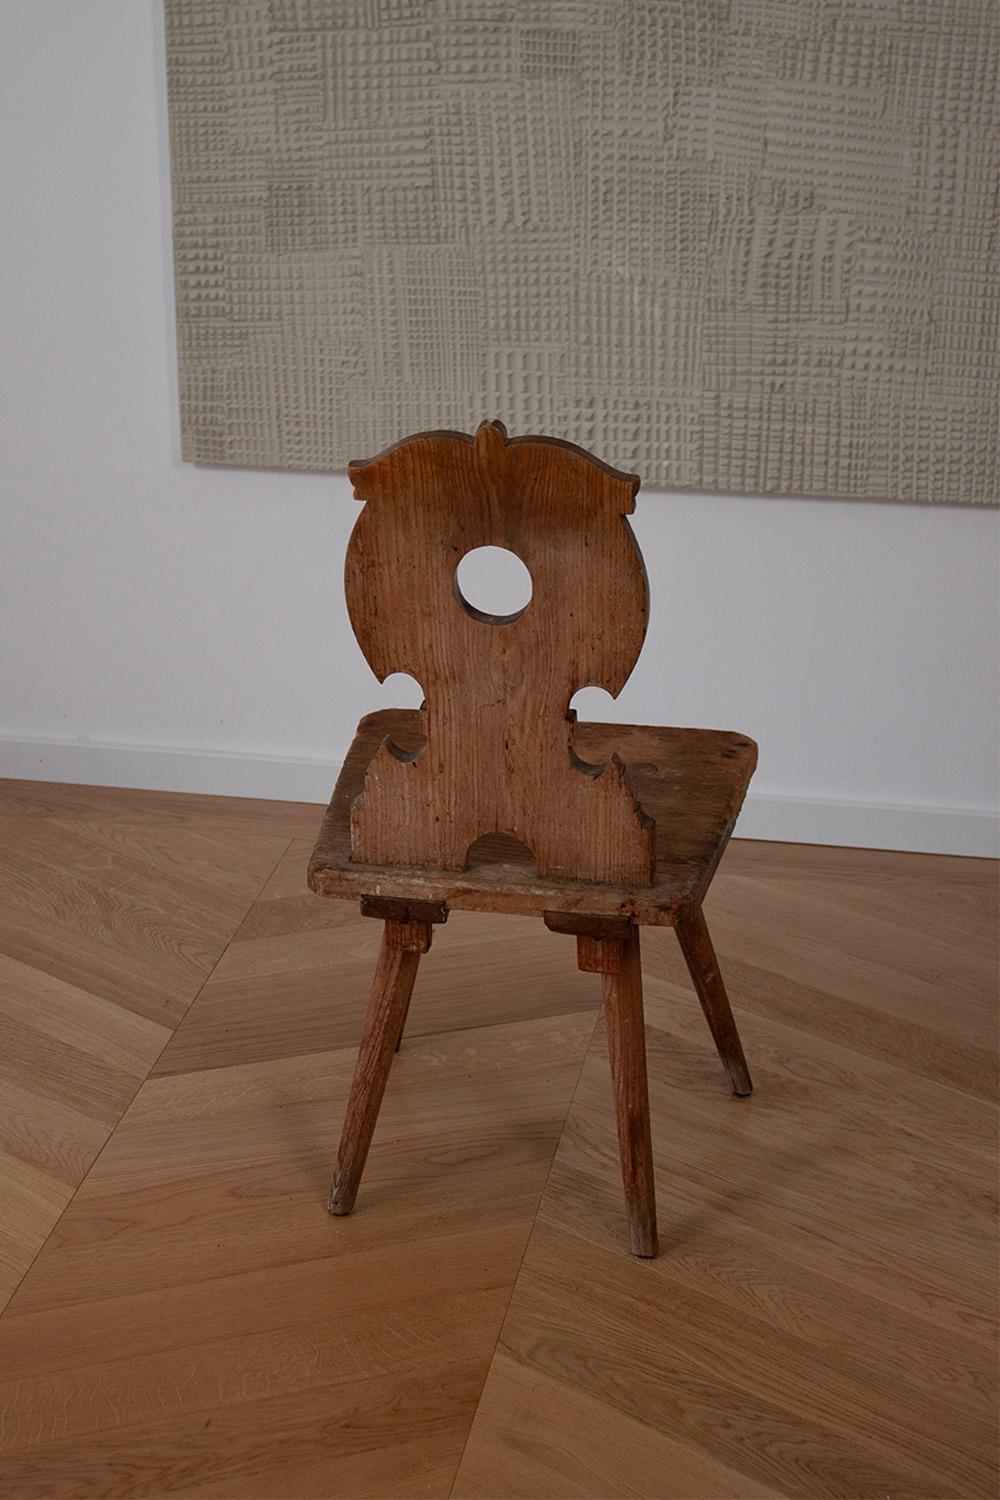 Stand Alone German Primitive Farmers Chair, Holz, Stabelle, geschnitzte Rückenlehne  (Handgefertigt)